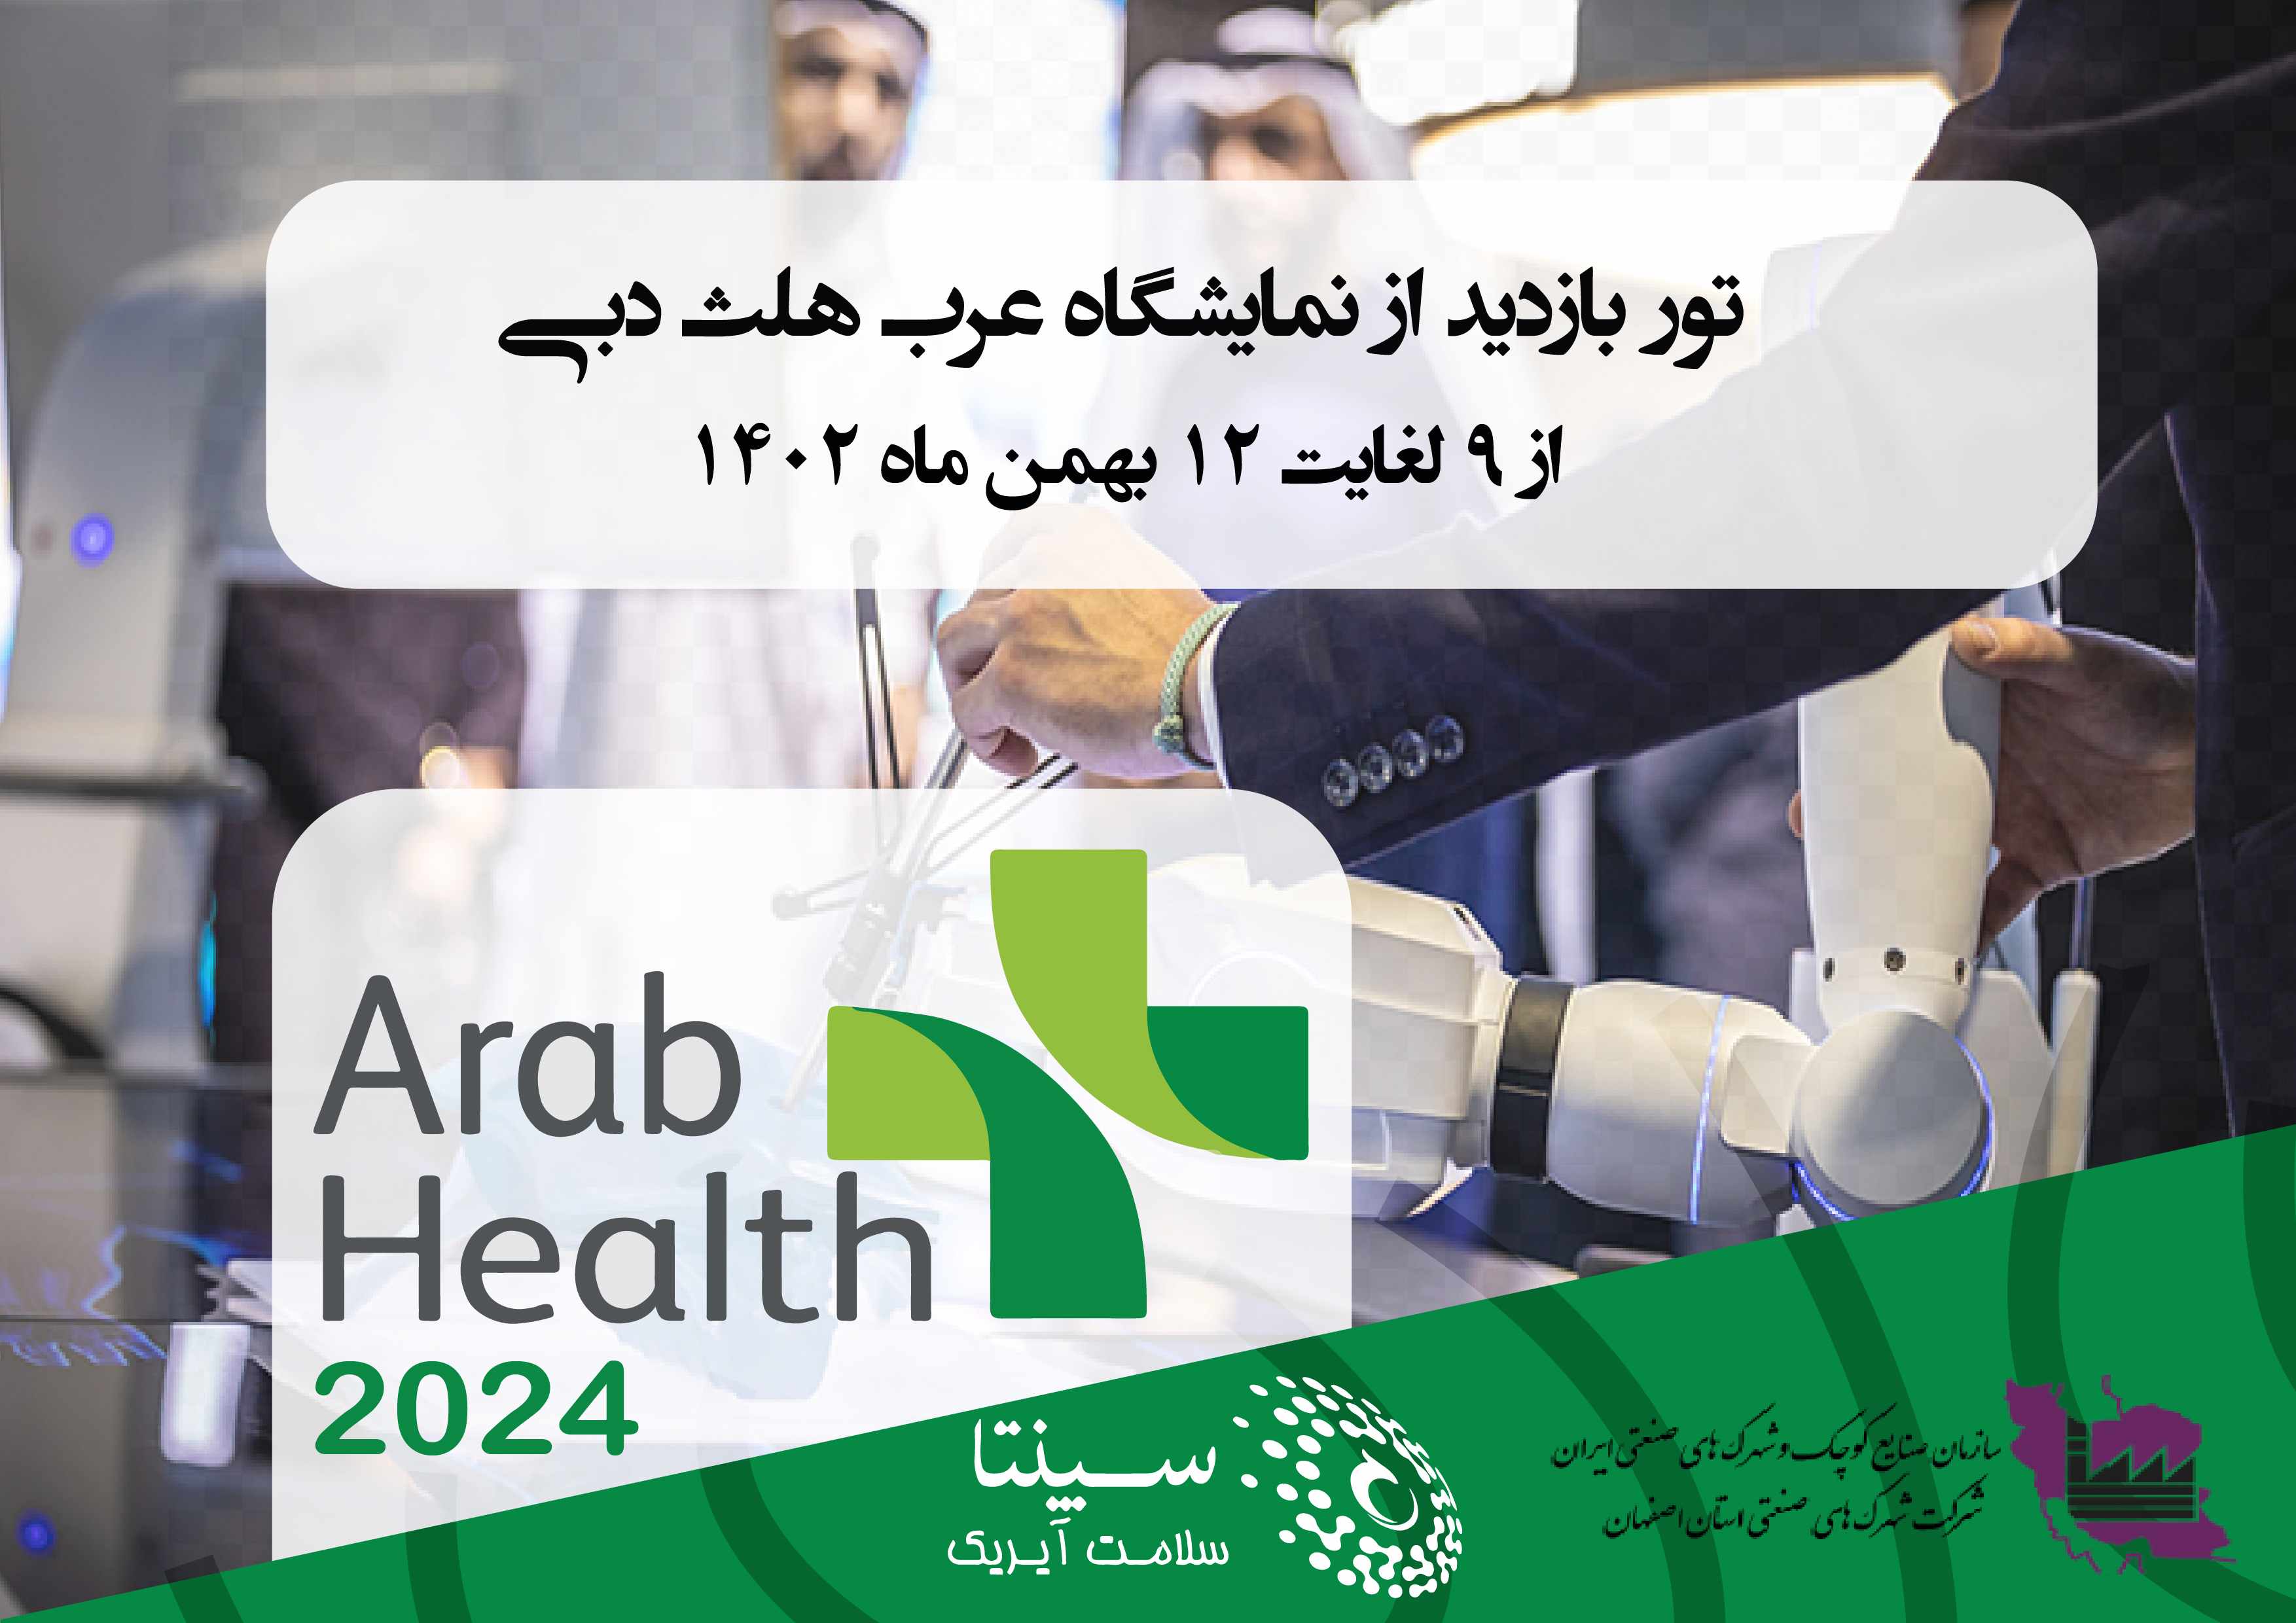 فراخوان پذیرش شرکت ها جهت حضور در تور نمایشگاهی عرب هلث دبی 2024 توسط کارگزاری سپنتا سلامت آیریک